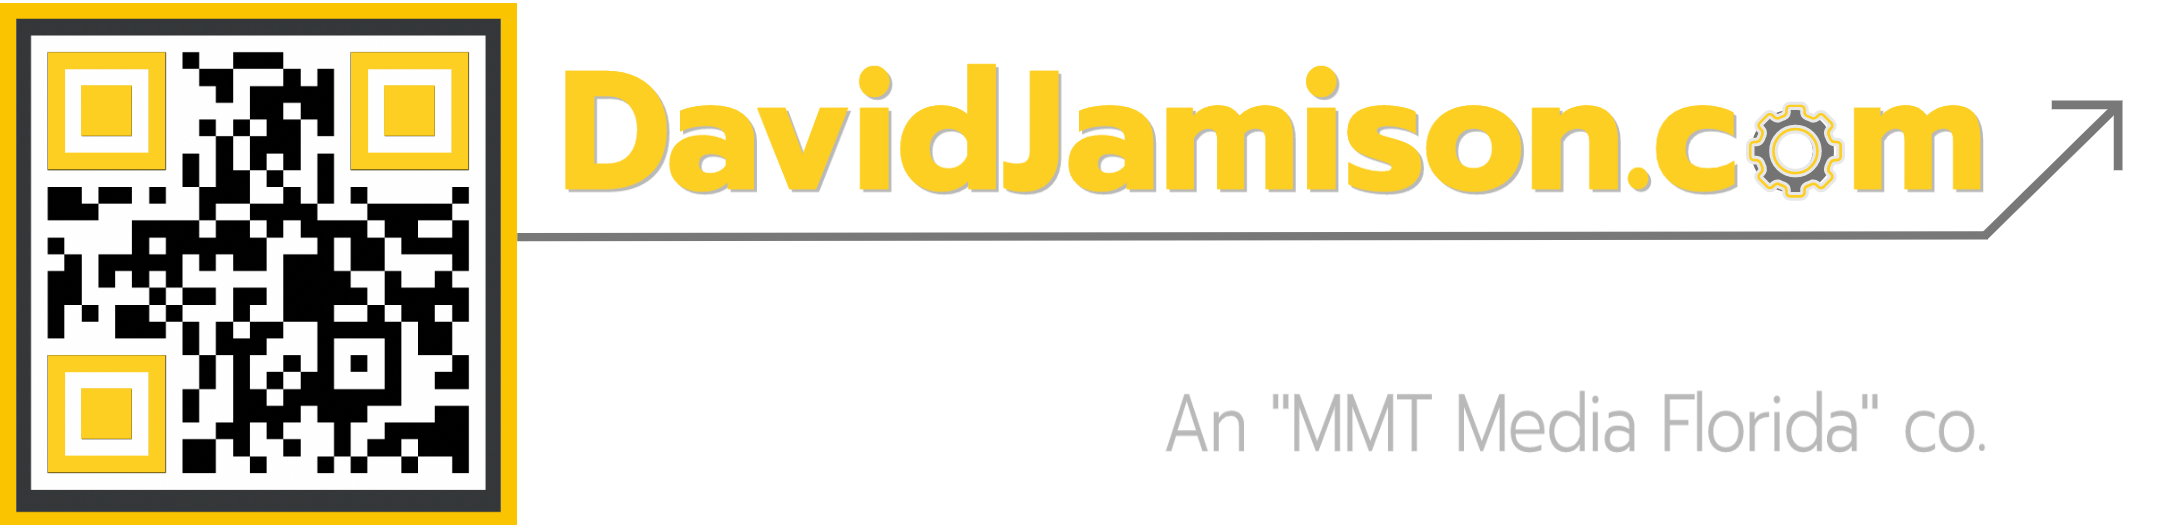 DavidJamison.com Digital Marketing for Real Estate Agents